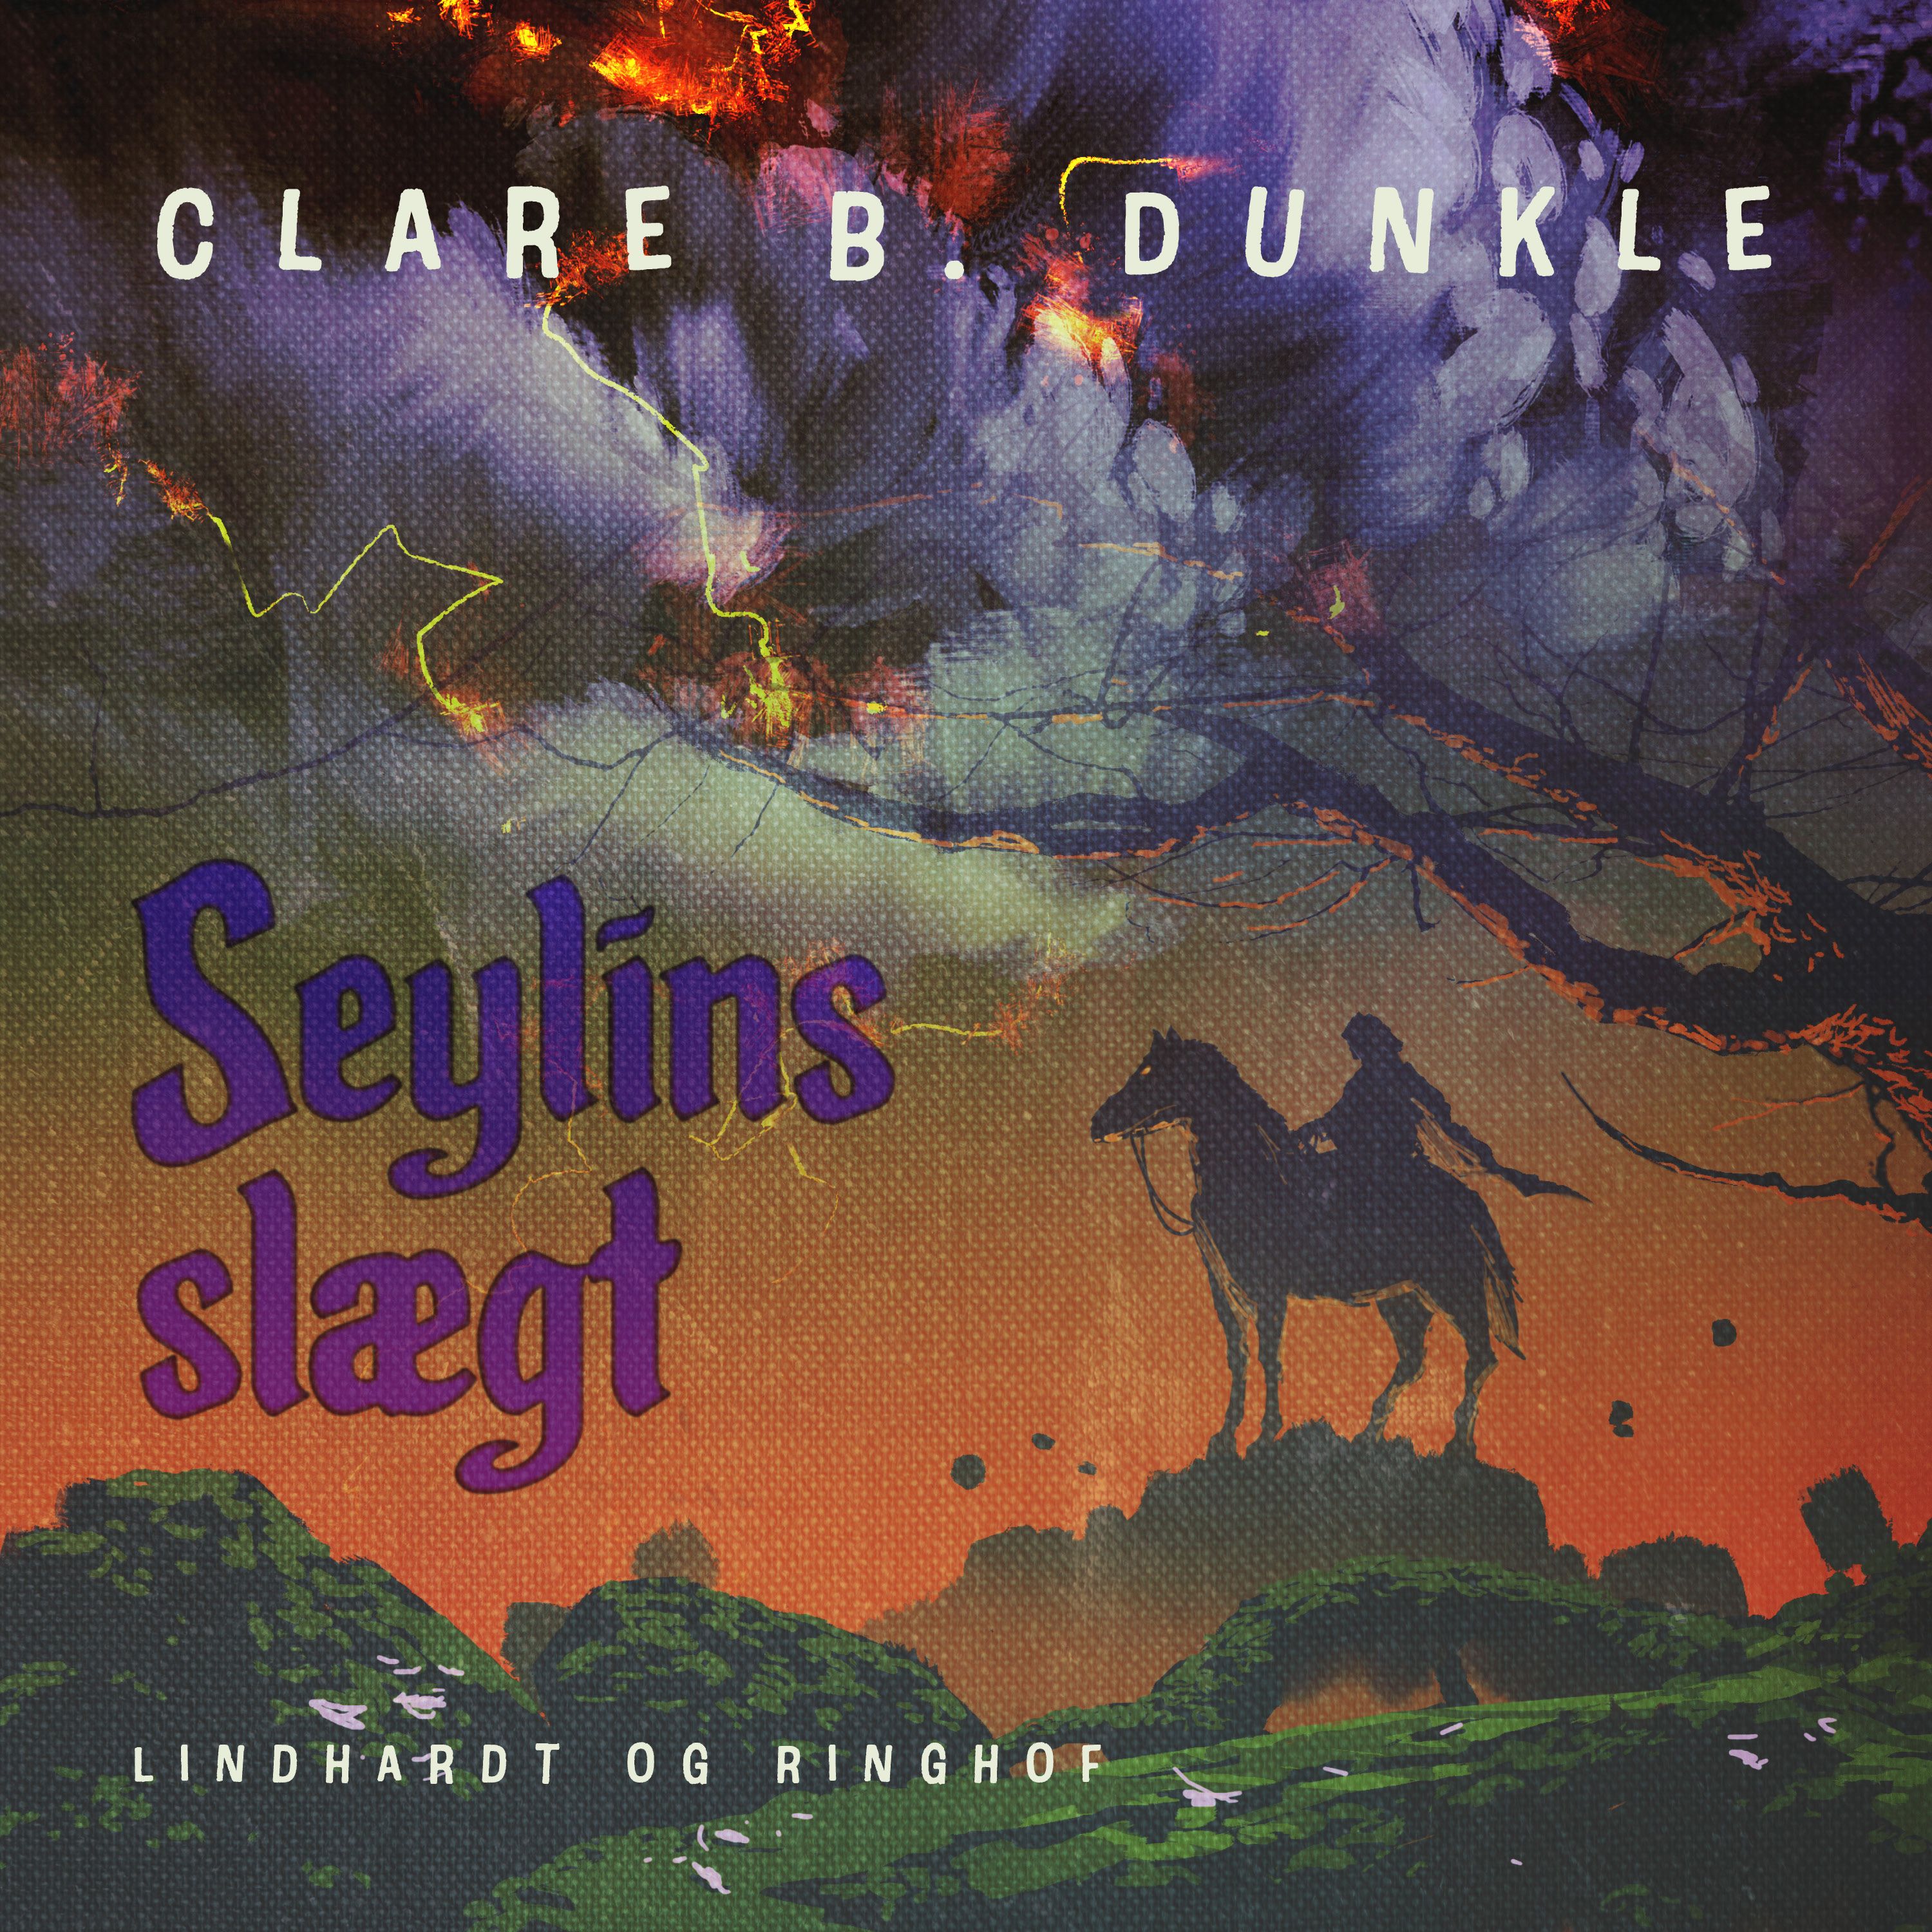 Seylins slægt, lydbog af Clare B. Dunkle